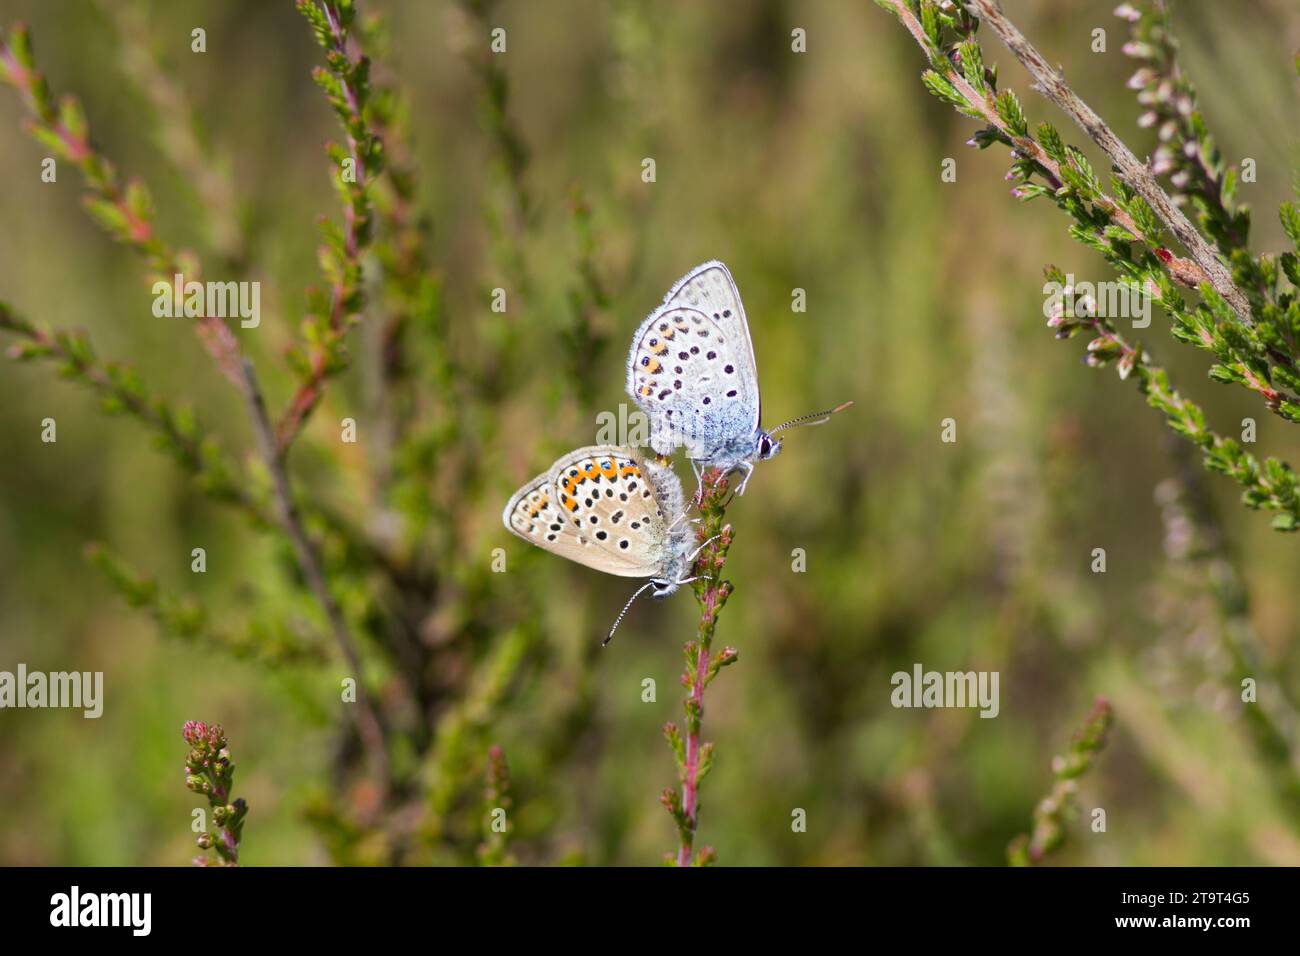 Coppia accoppiata di Blue Butterflies con borchie d'argento, prees Heath, Shropshire, Regno Unito Foto Stock